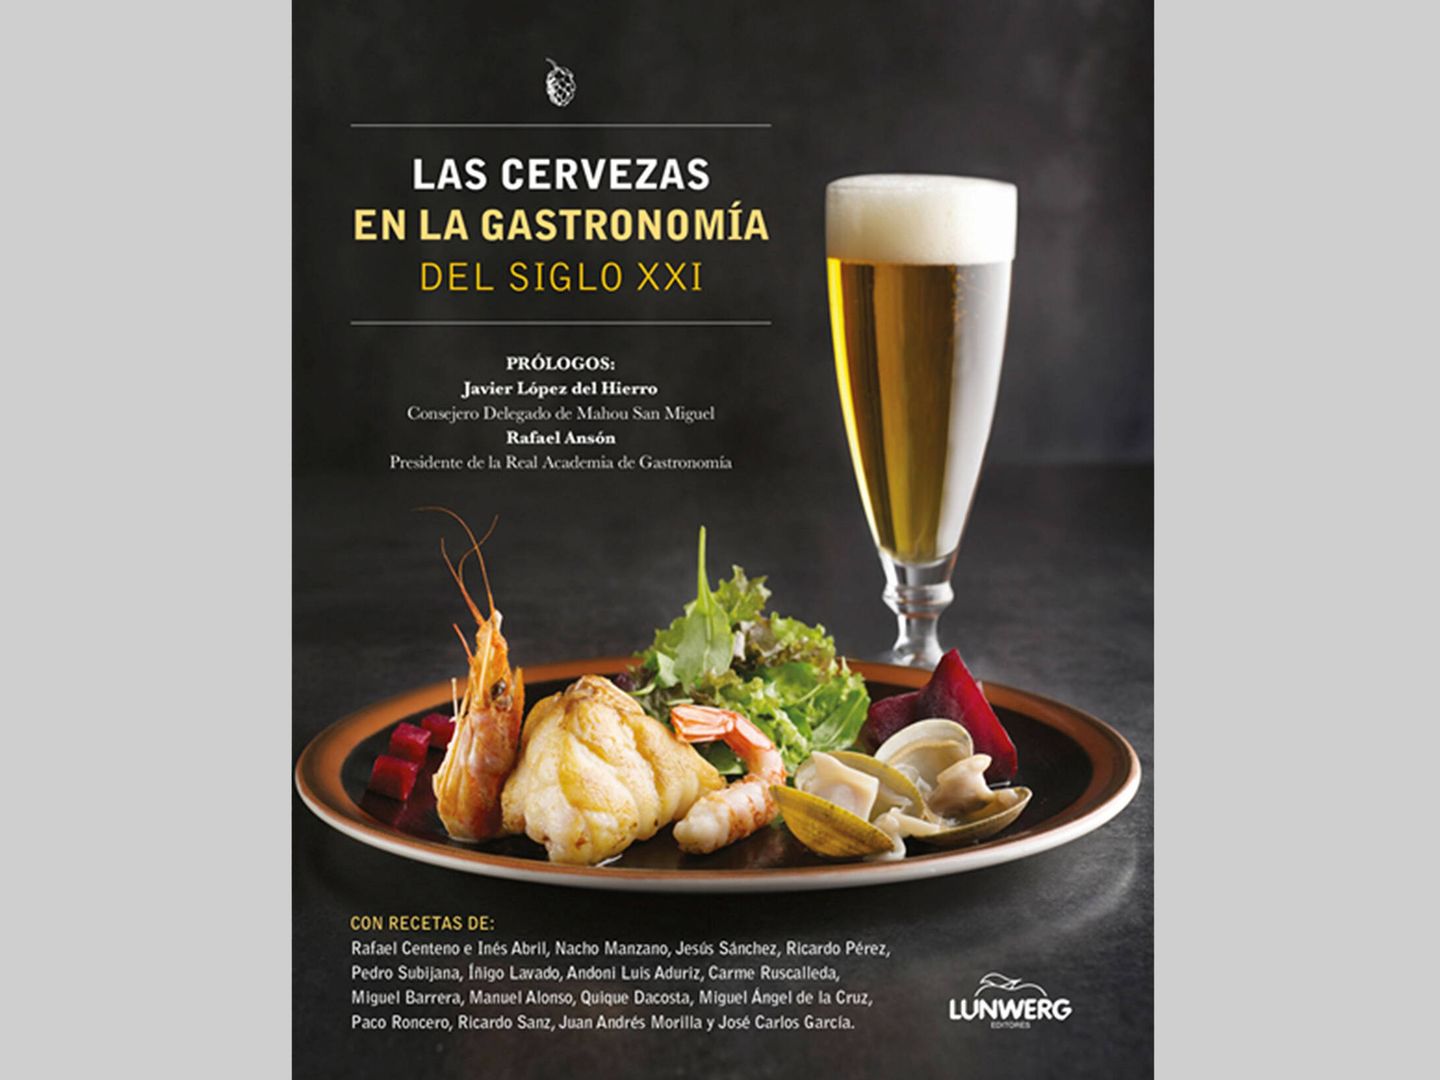 Portada del libro 'Las cervezas en la gastronomía del siglo XXI'. (Rafael Ansón)